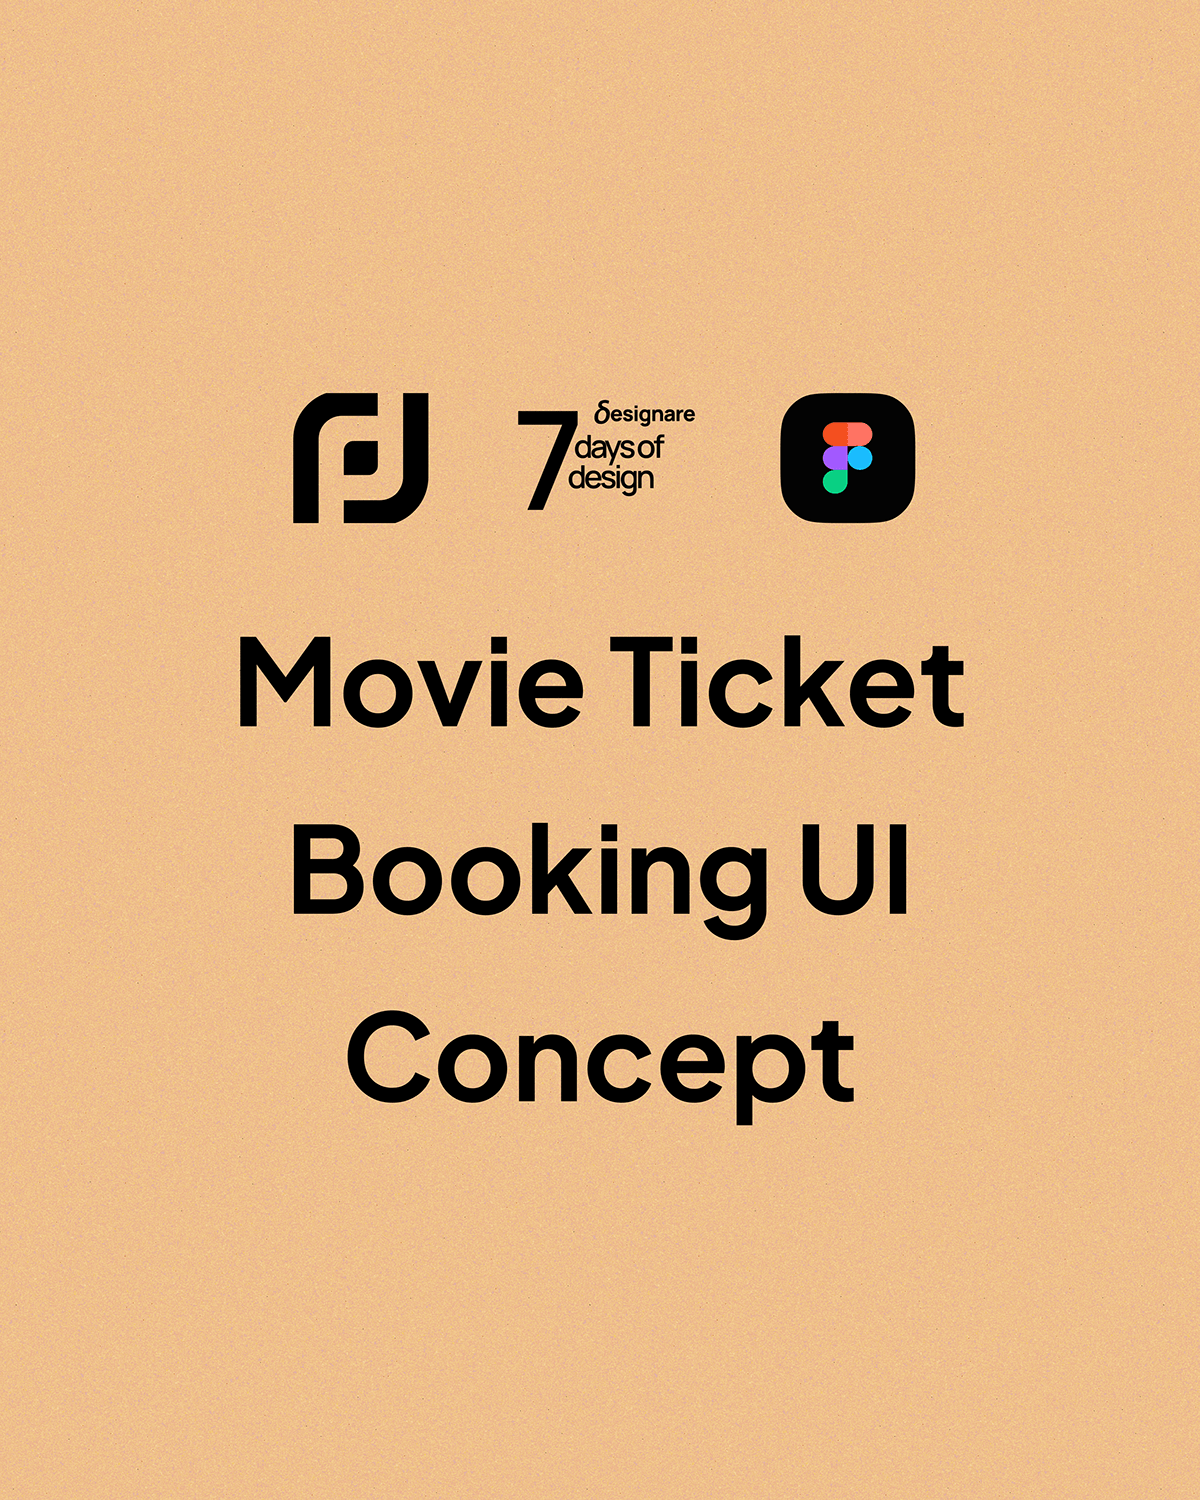 UI/UX ui design design Retro minimalist designare movie ticket app design mobile ios